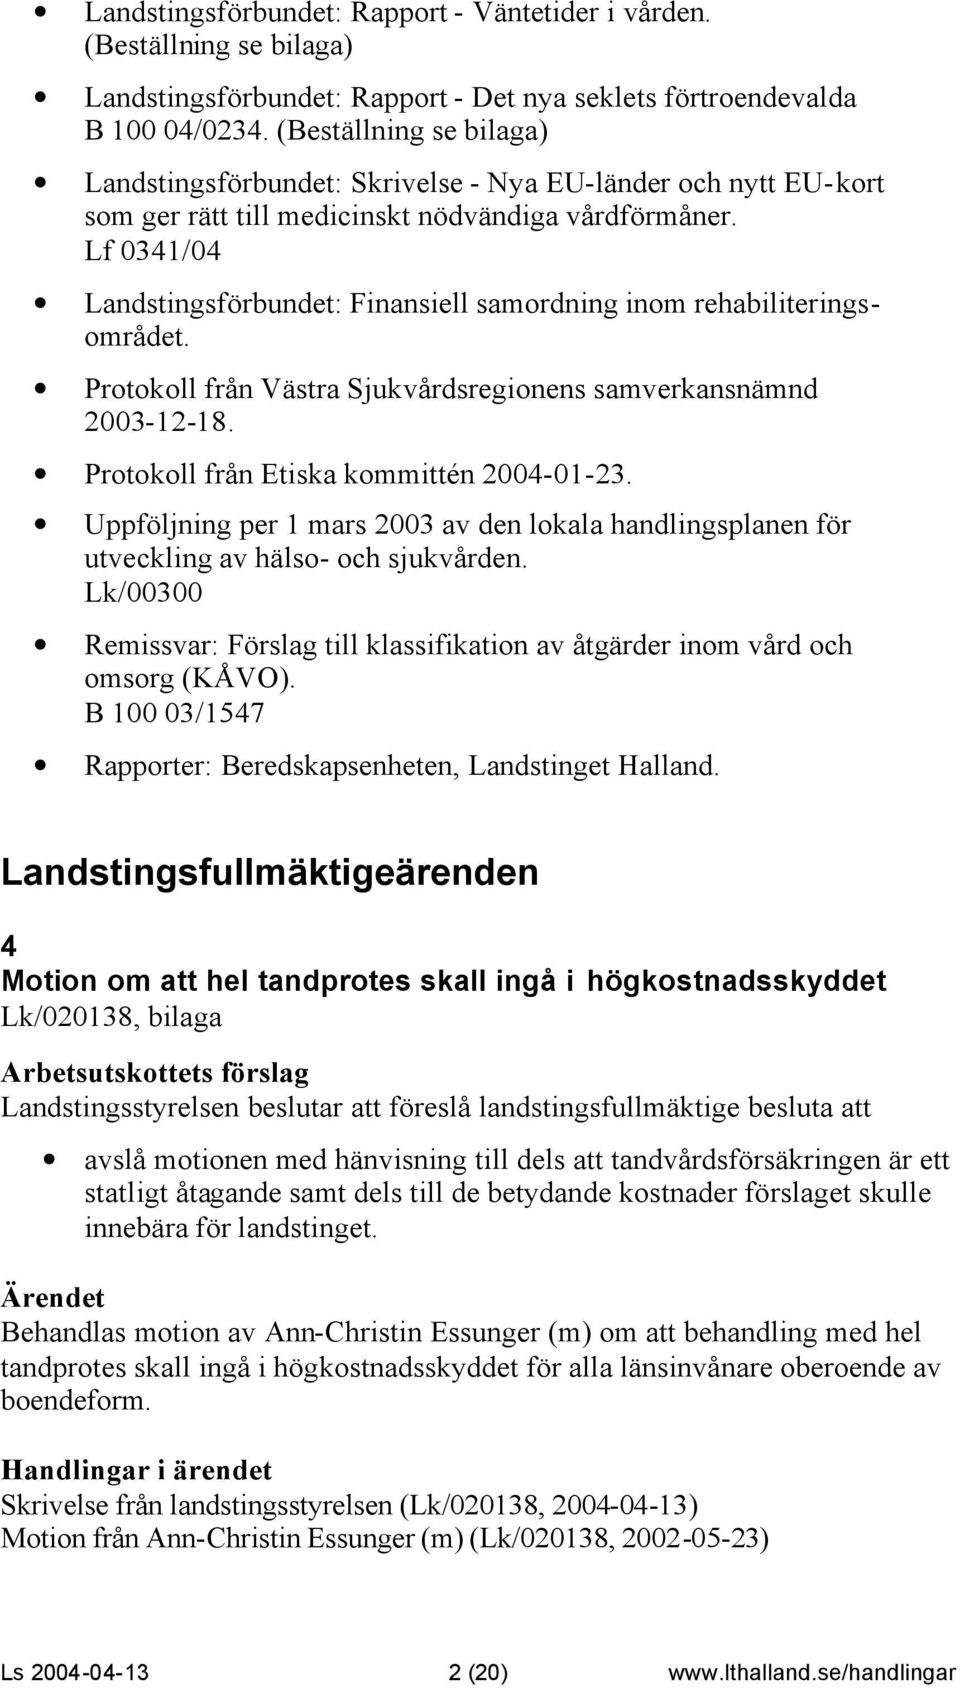 Lf 0341/04 Landstingsförbundet: Finansiell samordning inom rehabiliteringsområdet. Protokoll från Västra Sjukvårdsregionens samverkansnämnd 2003-12-18. Protokoll från Etiska kommittén 2004-01-23.